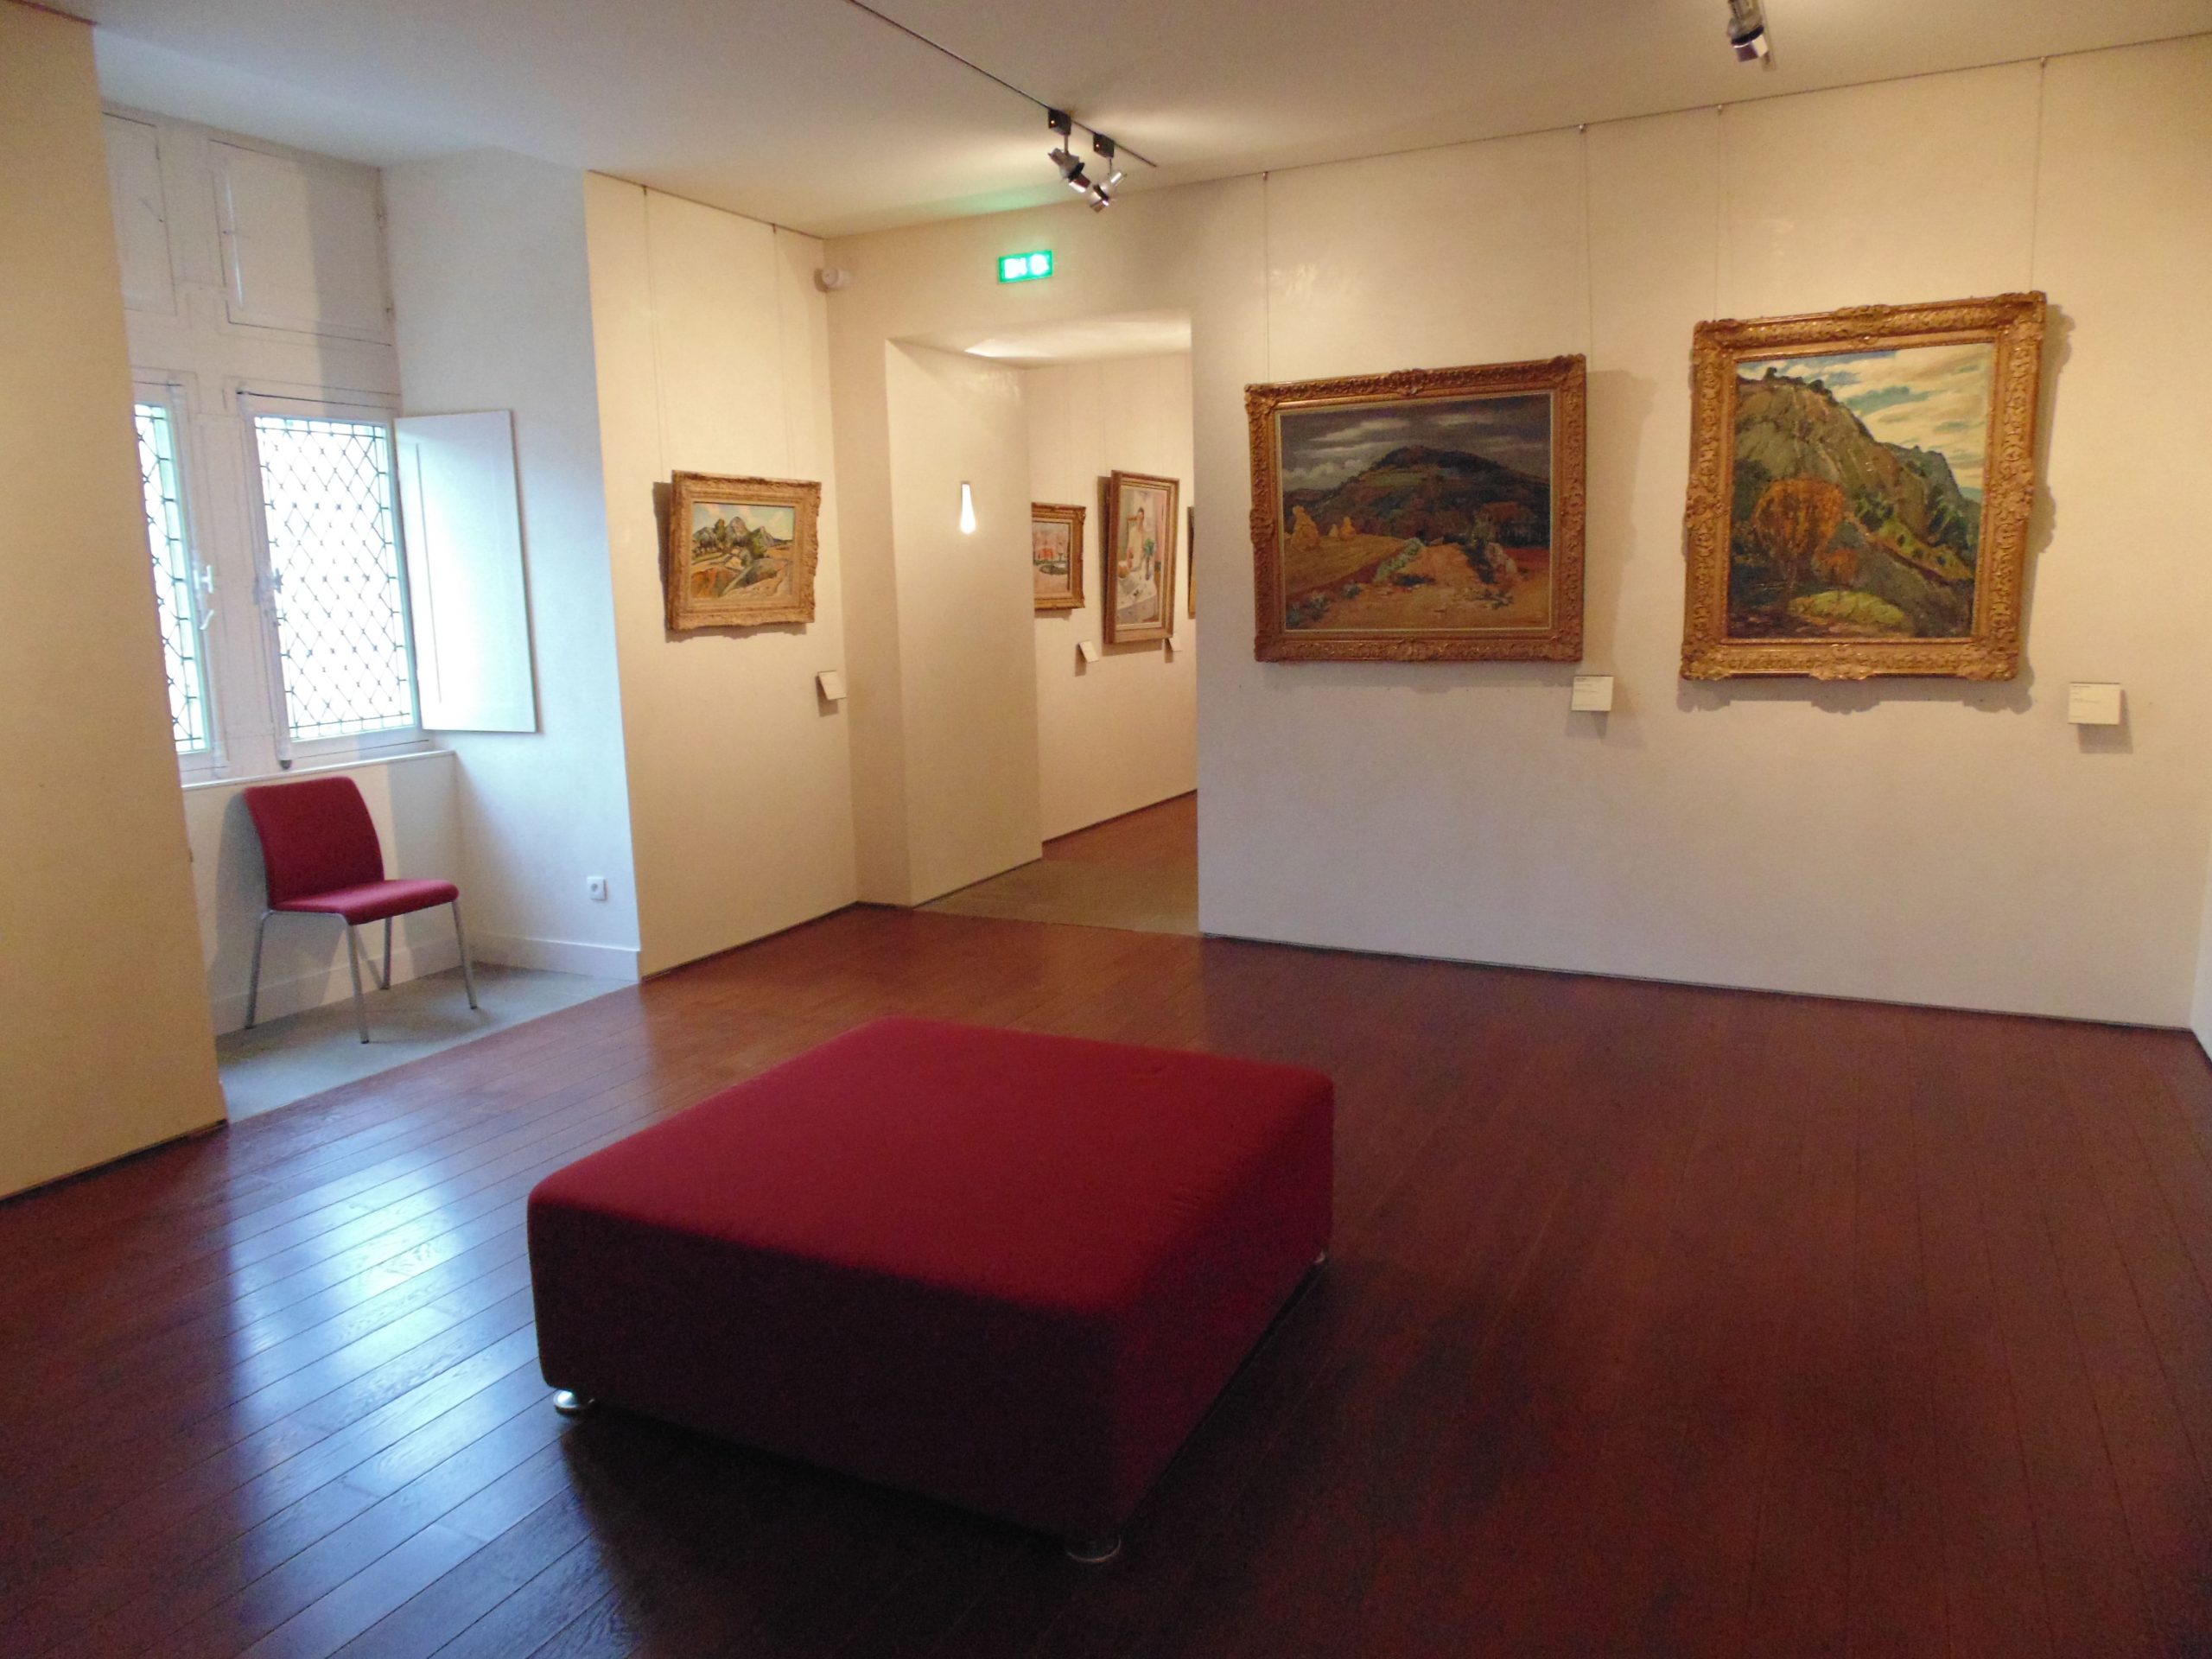 Lire la suite à propos de l’article Musée Toulouse Lautrec (81)